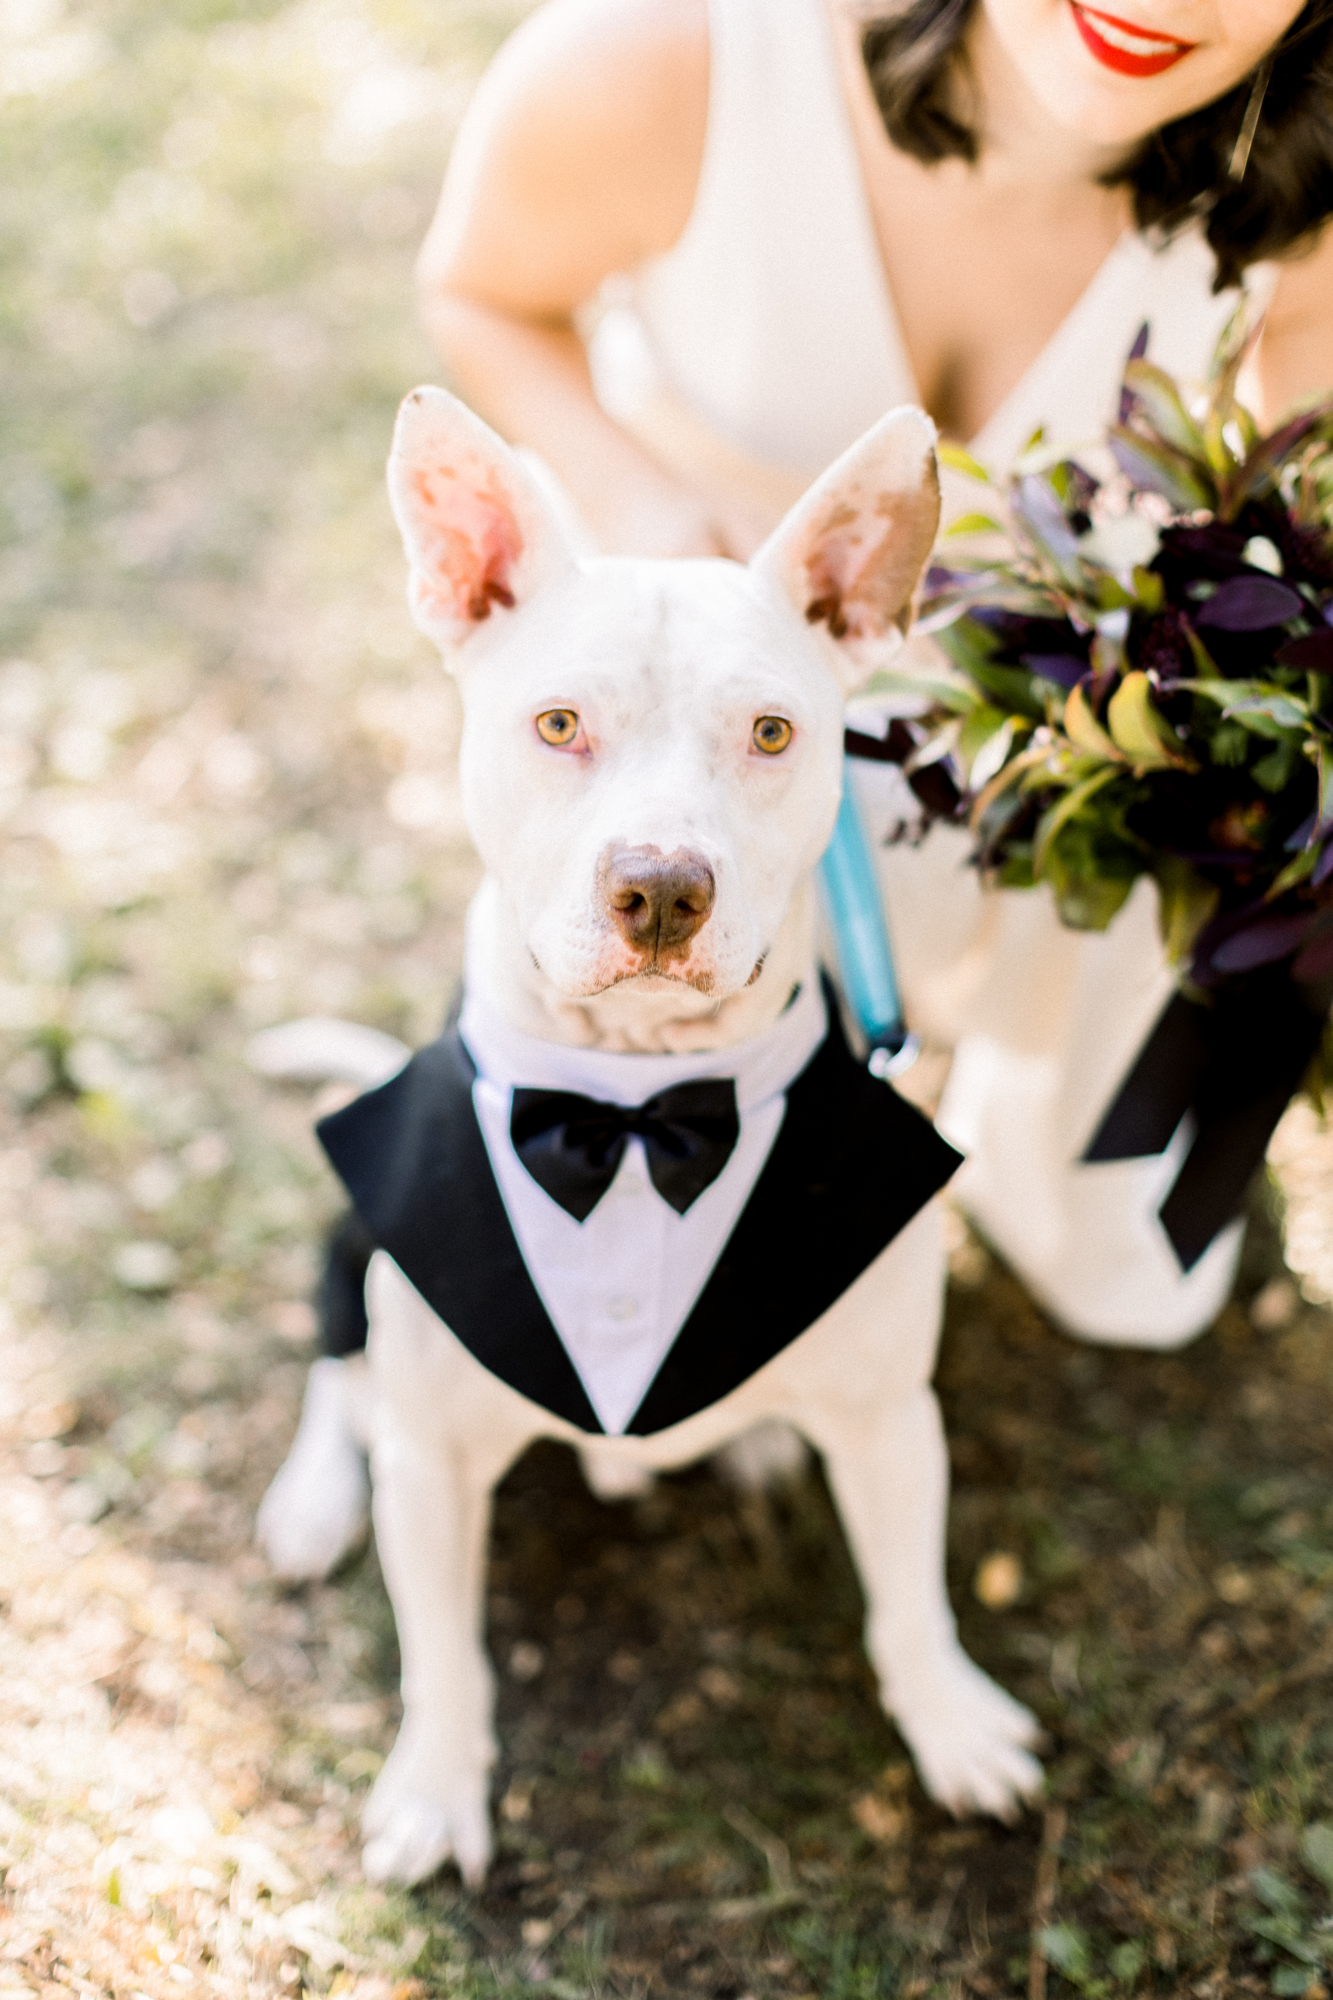 Cute Dog wedding photos in NYC